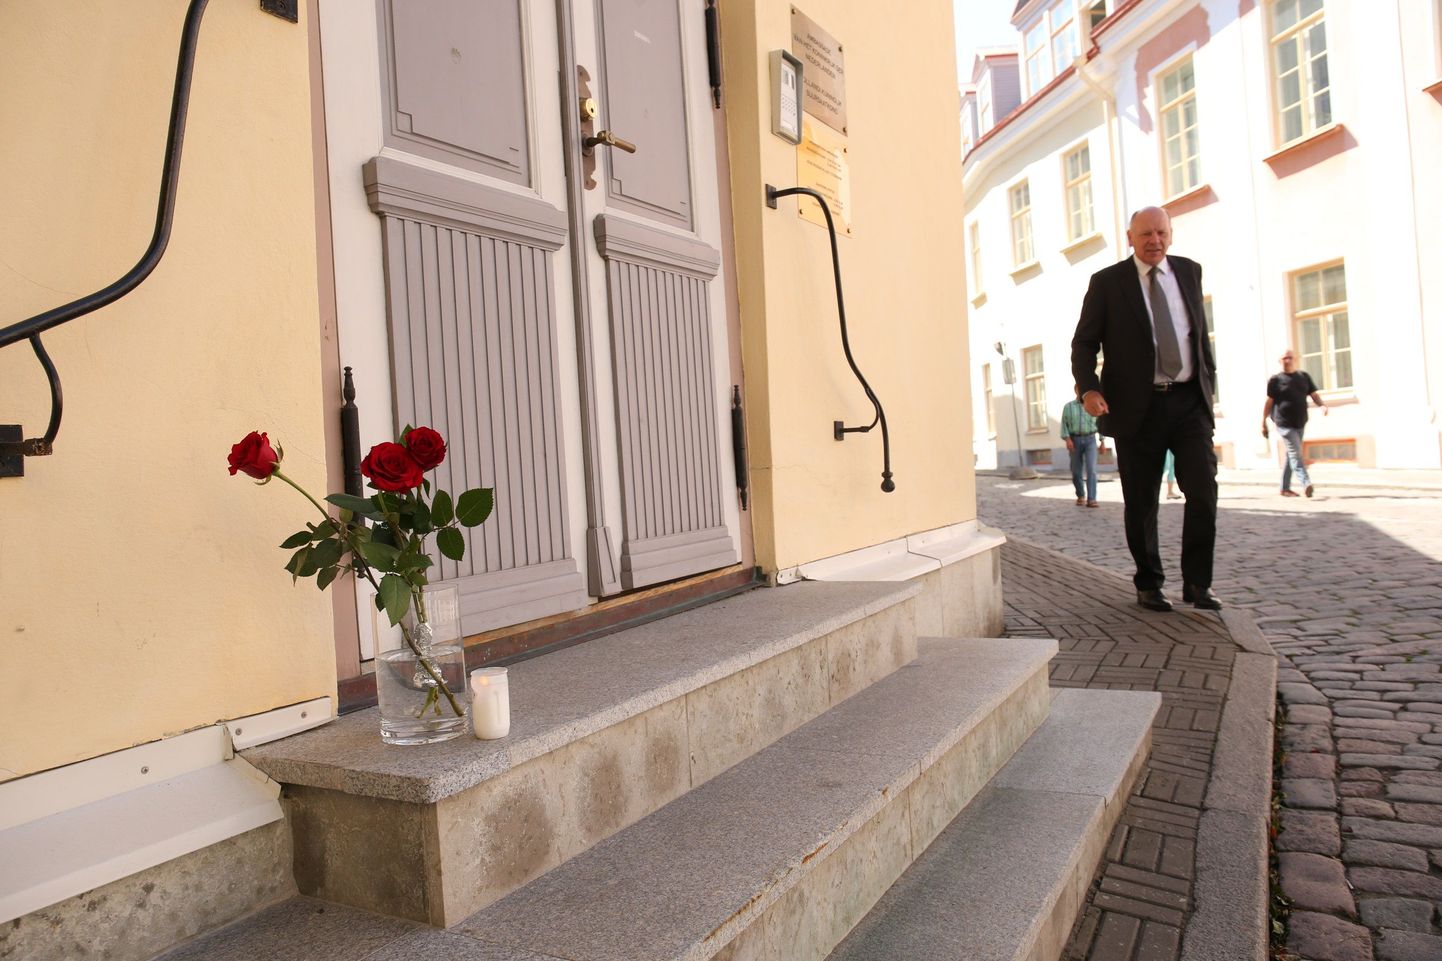 Hollandi suursaadik Eestis Jos Schellaars ütles, et eile õhtul toodi saatkonna ette lilli ja küünlaid. Tänaseks olid neist järel vaid üksikud roosid ja küünal.